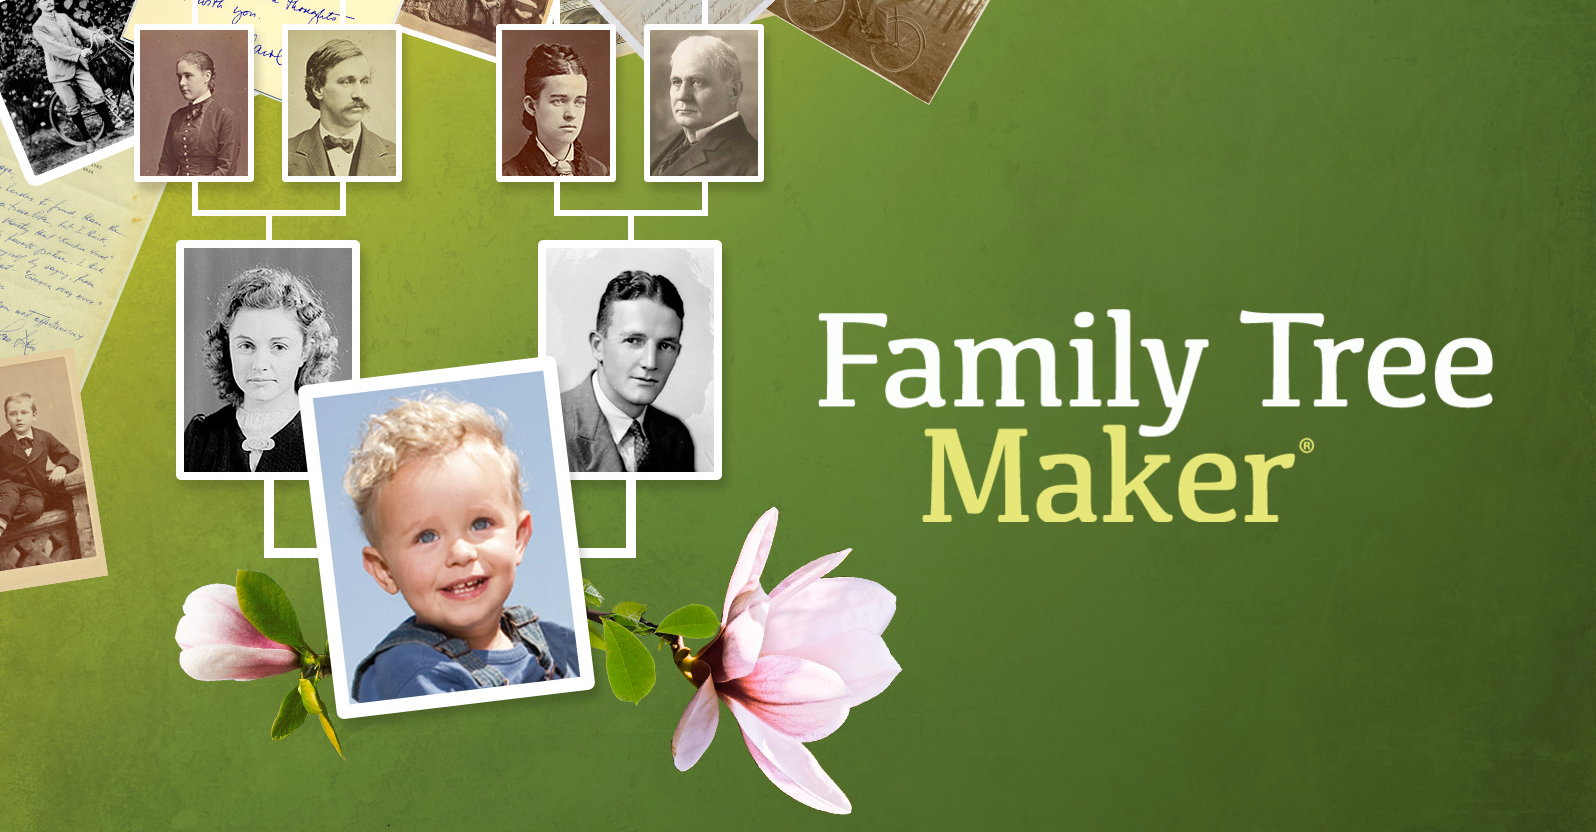 family tree maker 2014 free